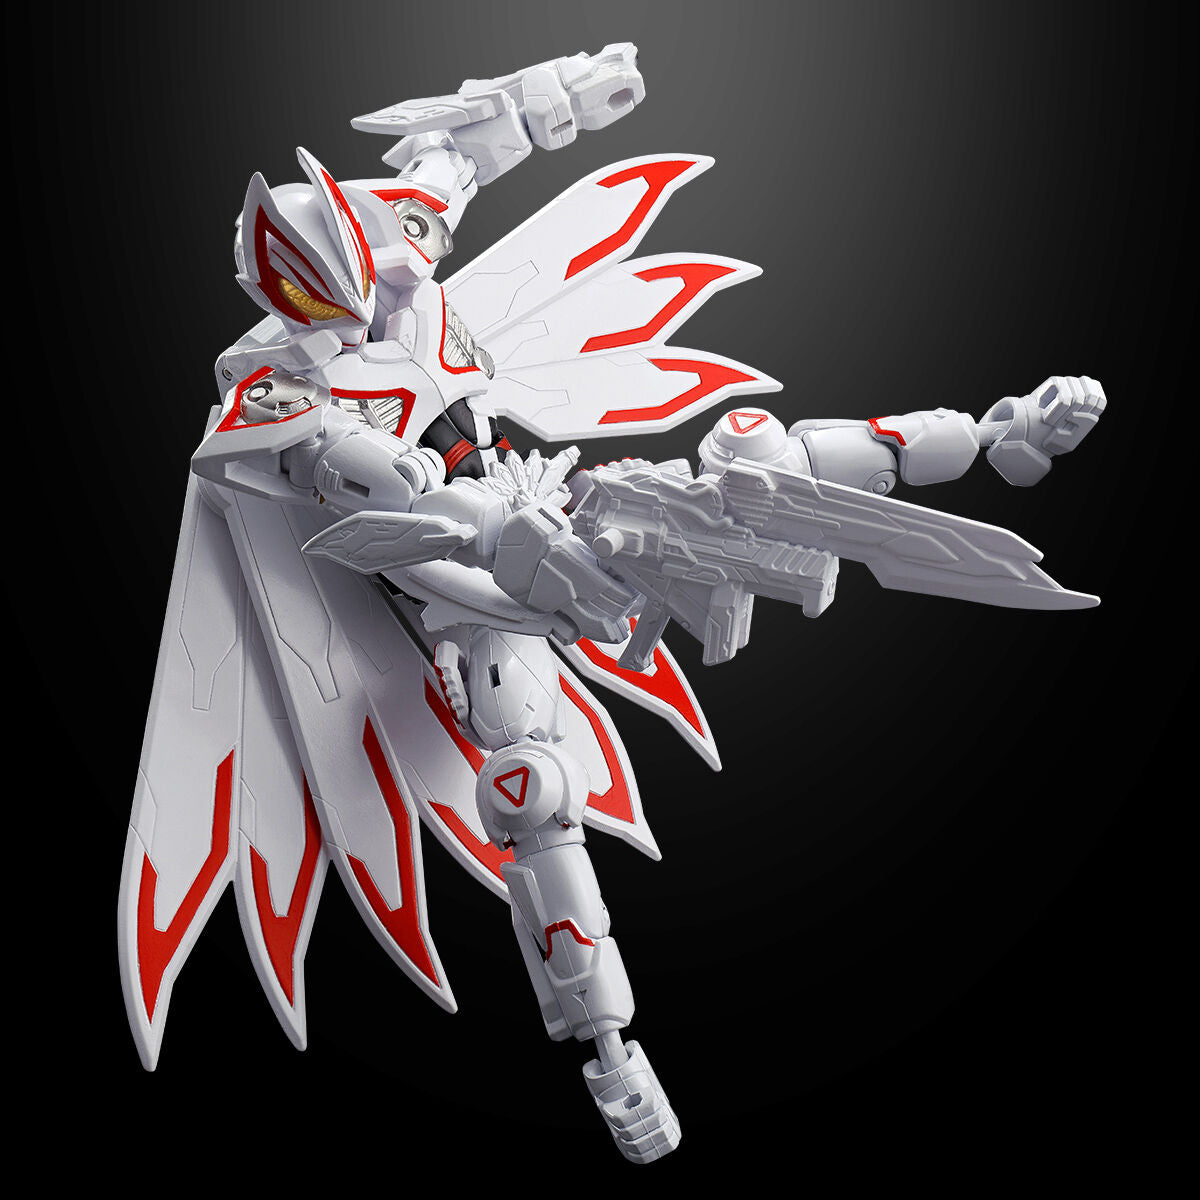 Kamen Rider Geats Revolve Change PB06 - Geats IX & Boost Mark III Set